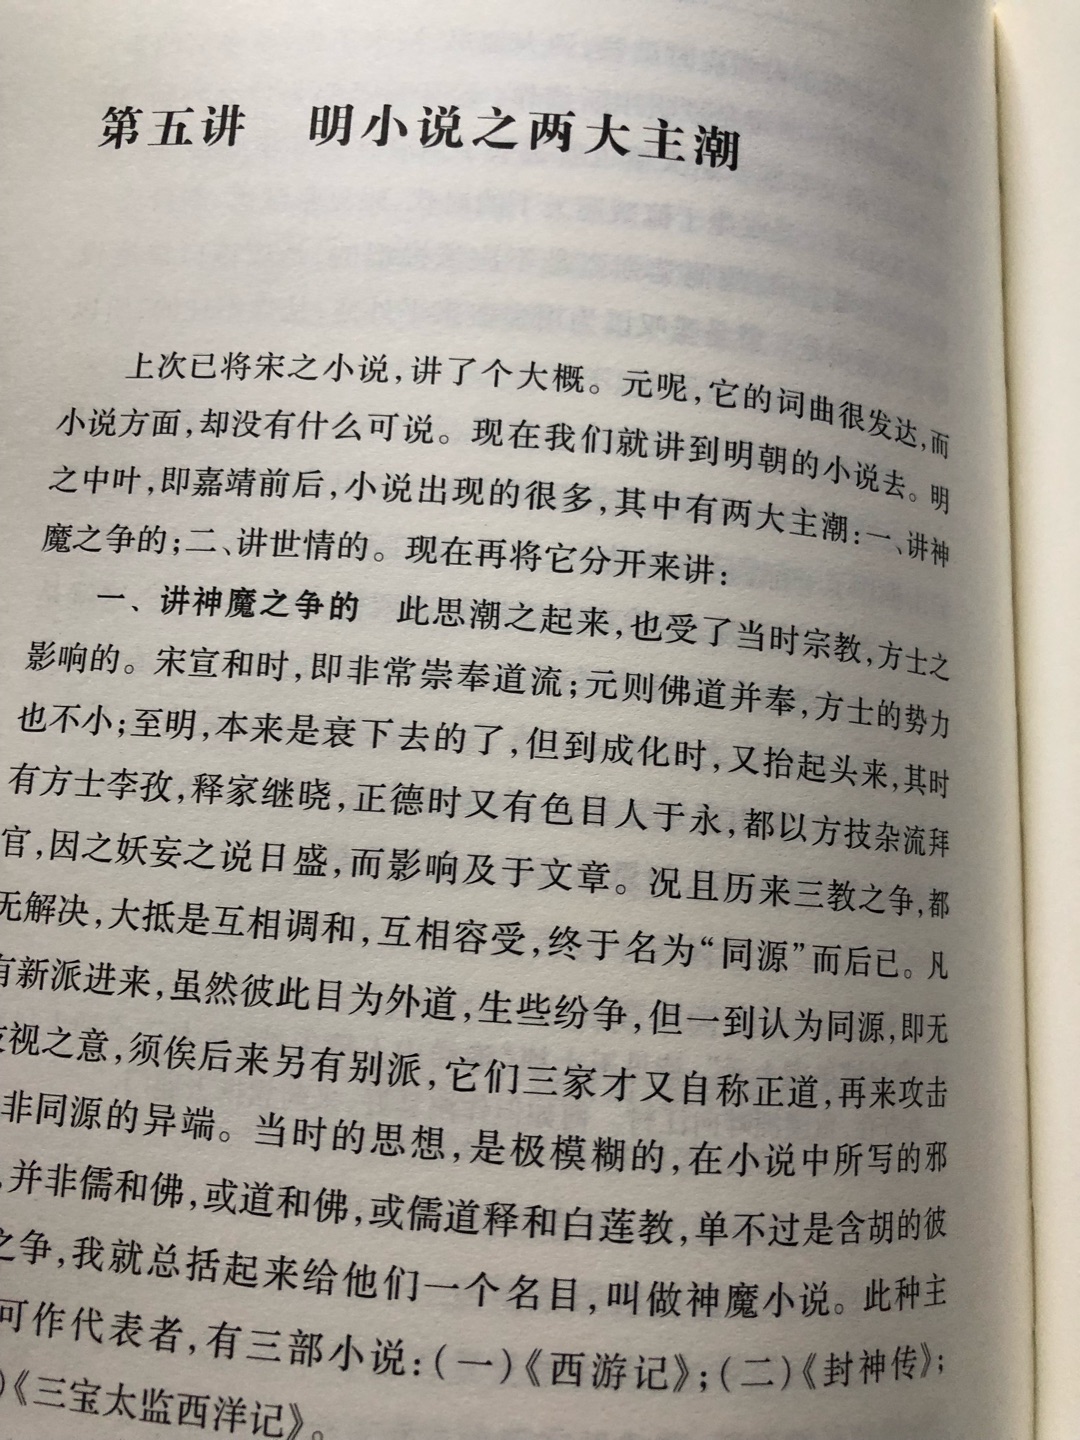 读懂迅哥的《中国小说史略》就读懂了中国的小说。经典之作，排版和装帧设计一般，对书的内容大打折扣。